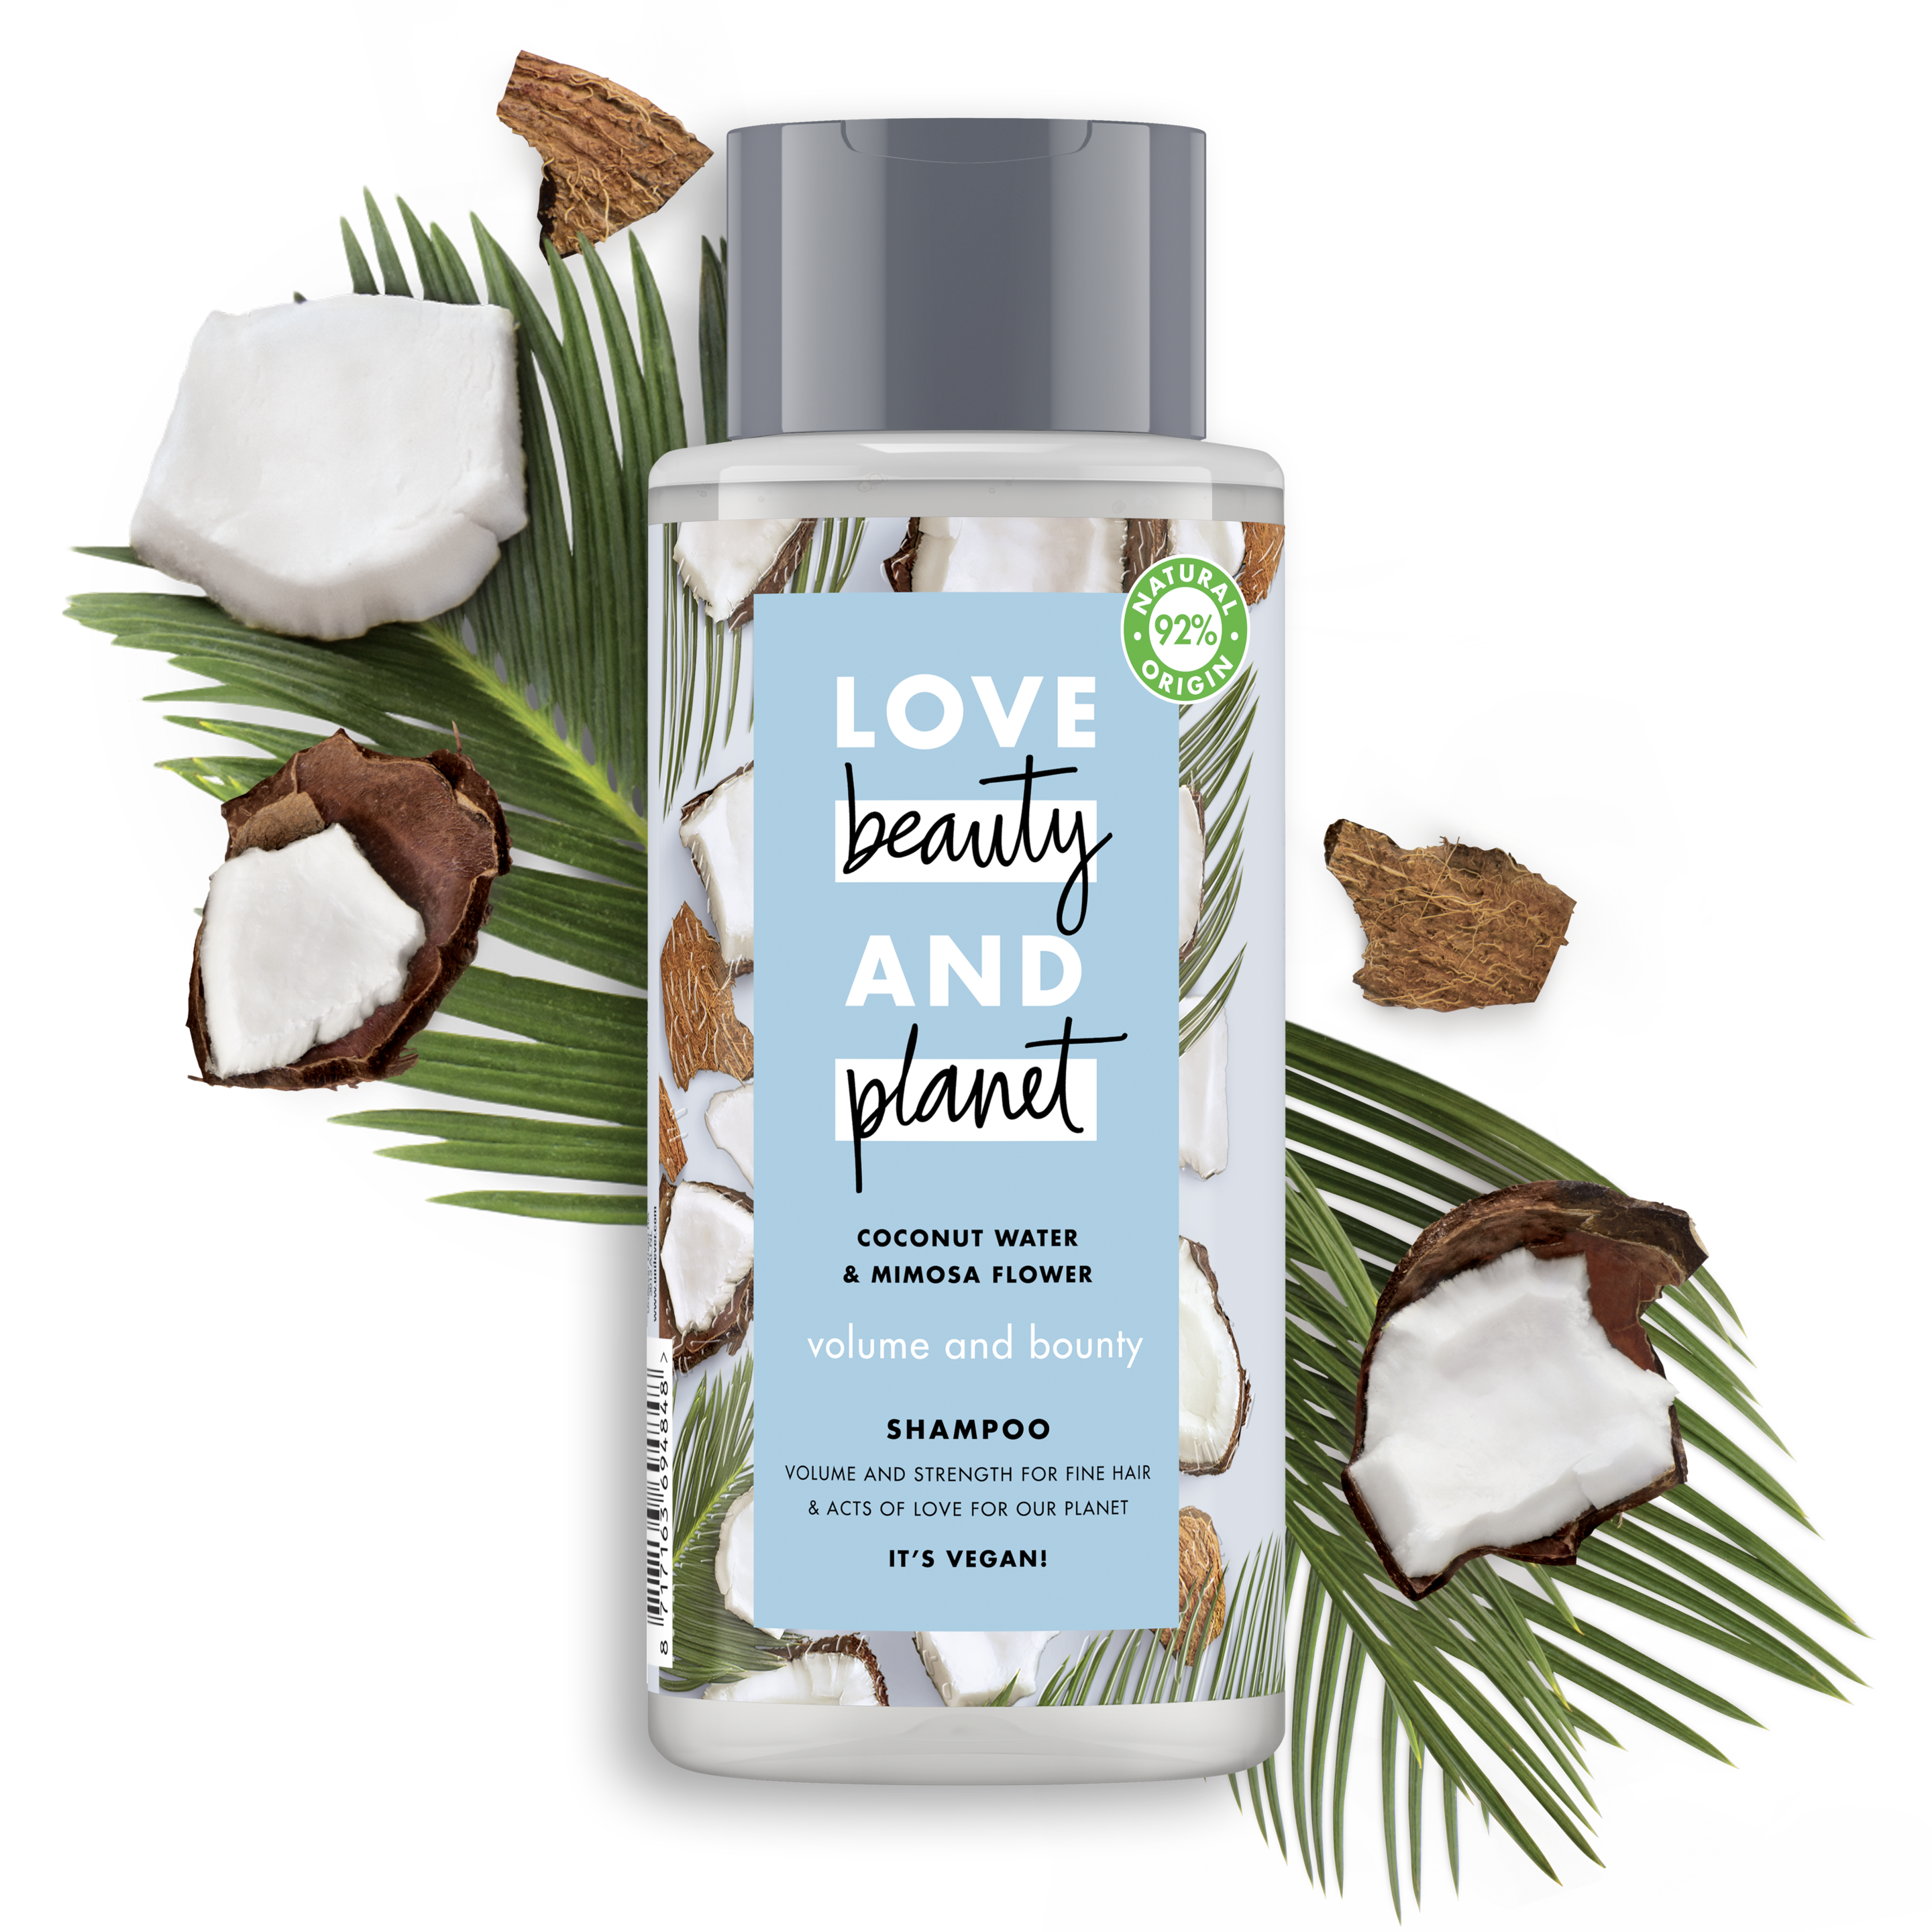 Forsiden av sjampoflasken Love Beauty Planet Coconut Water & Mimosa Flower Shampoo  Volume & Bounty 400ml